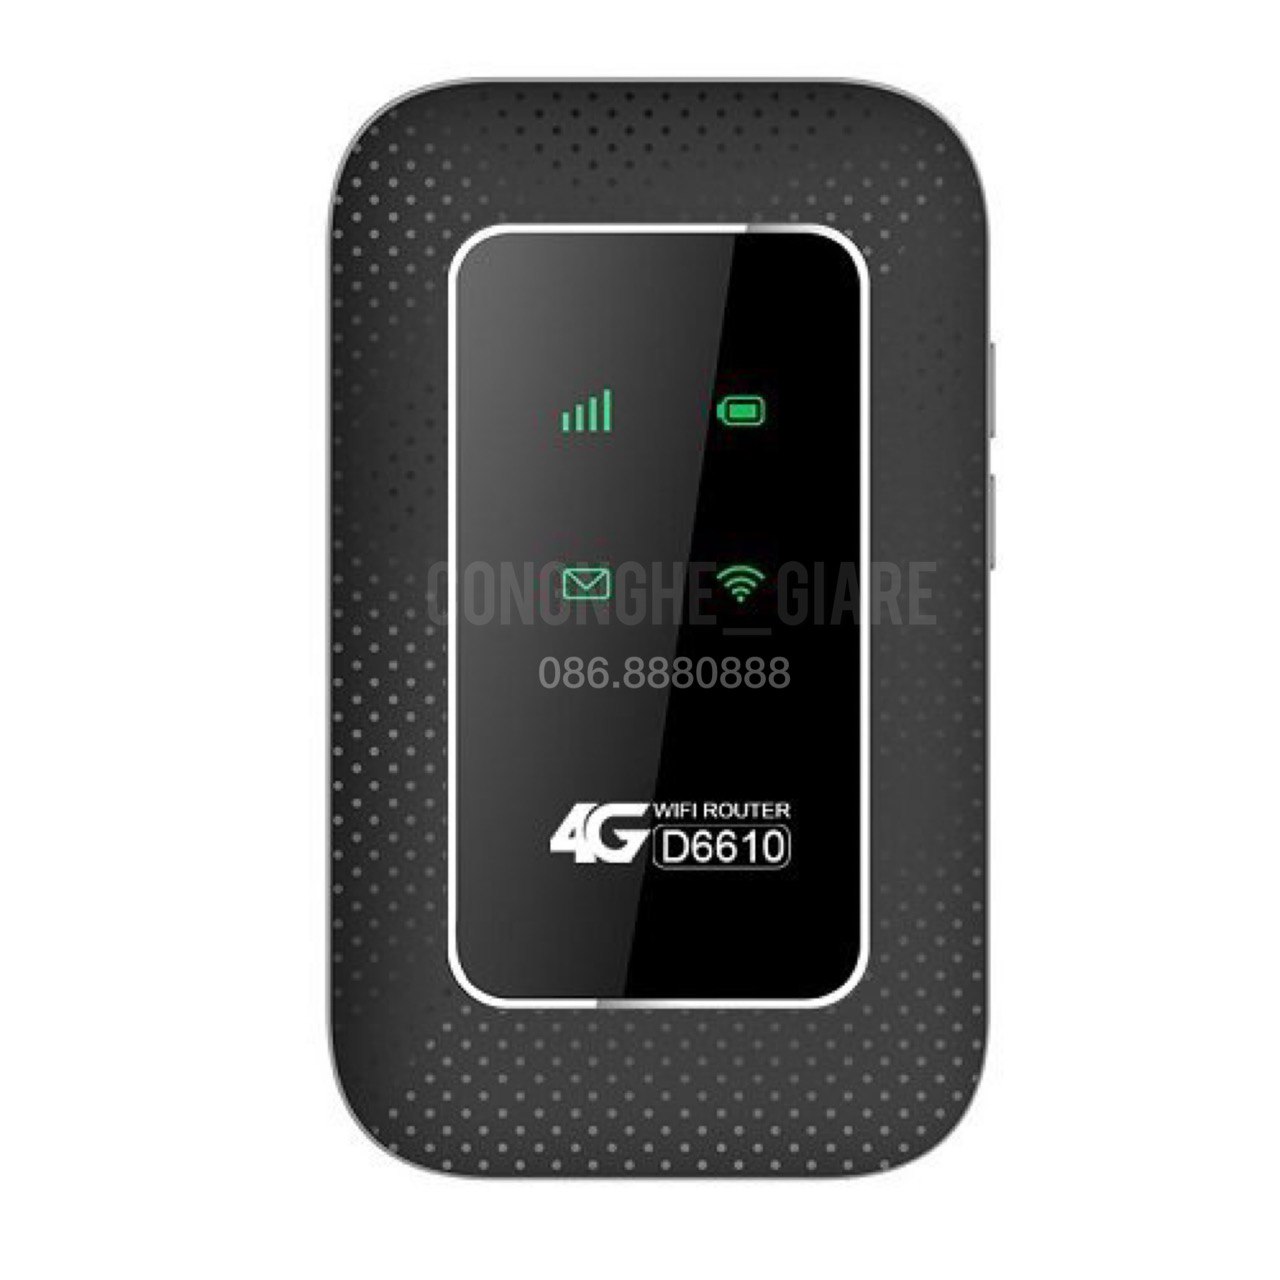 [Hàng chính hãng] Bộ phát Wifi 4G/5G Viettel - D6610 - Tốc độ cao 150Mbps